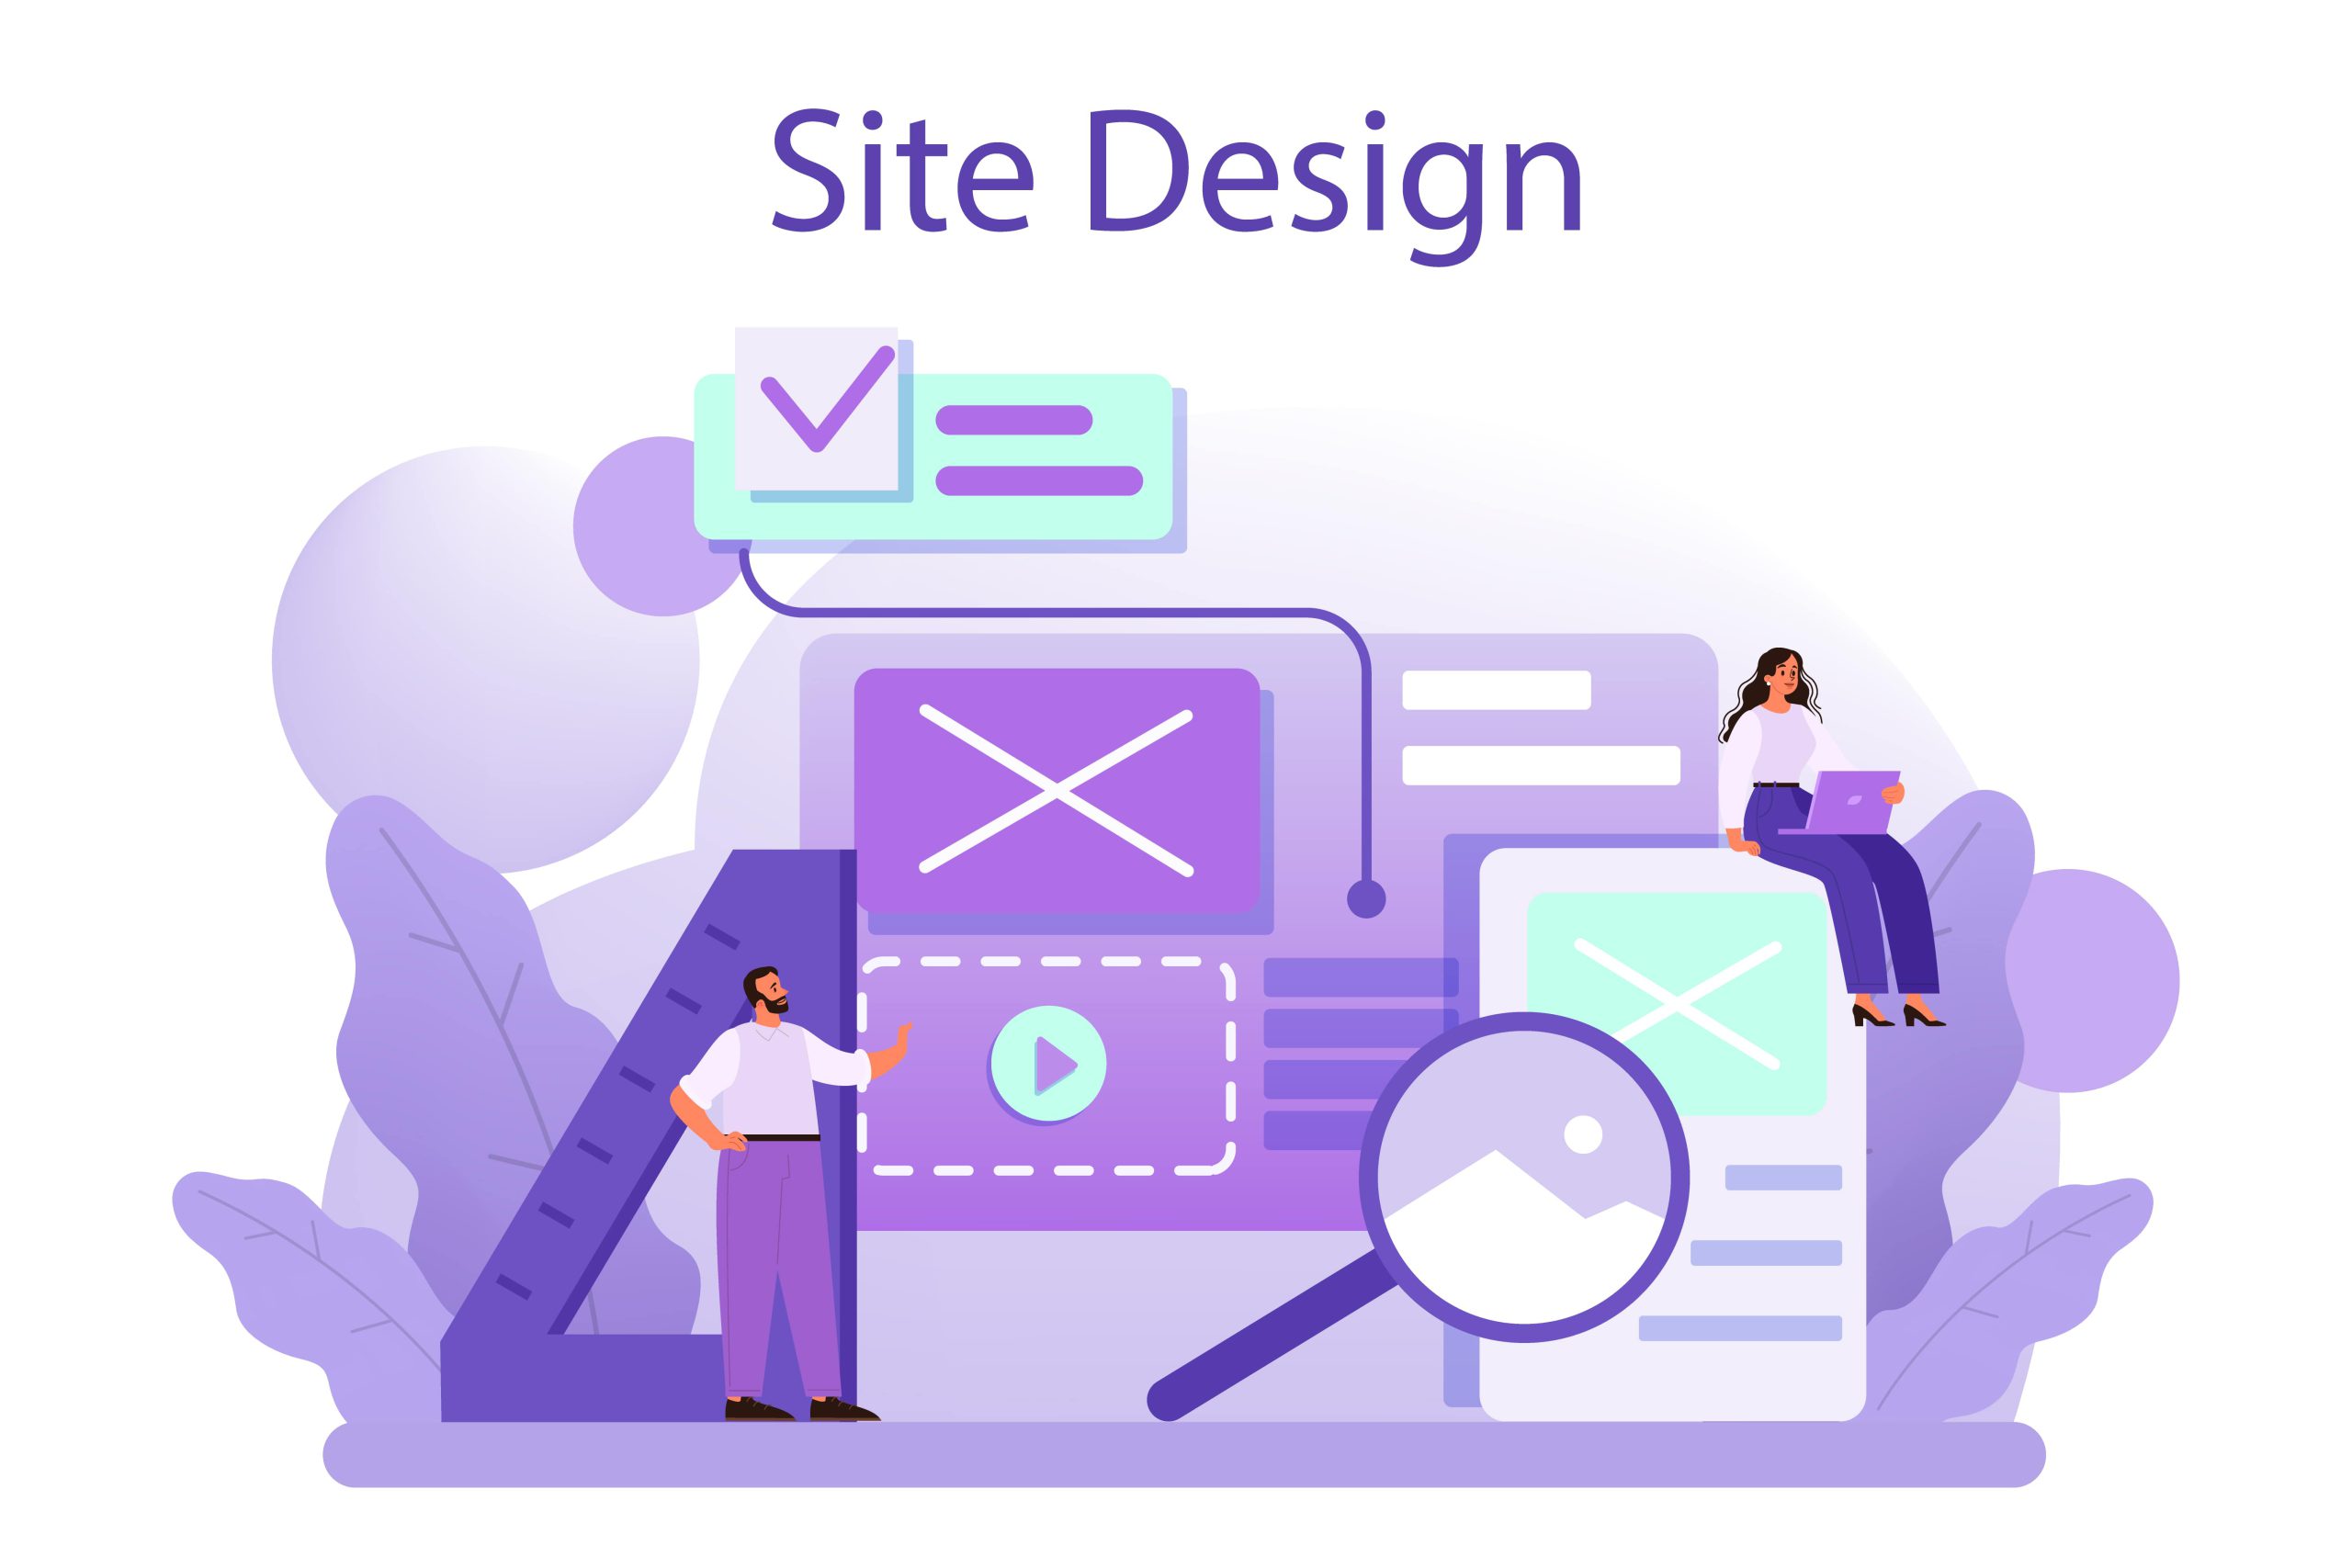 طراحی سایت به فرآیند طراحی و توسعه وبسایت‌ها به منظور نمایش اطلاعات، محصولات، خدمات و ارتباط با مخاطبان گفته می‌شود.